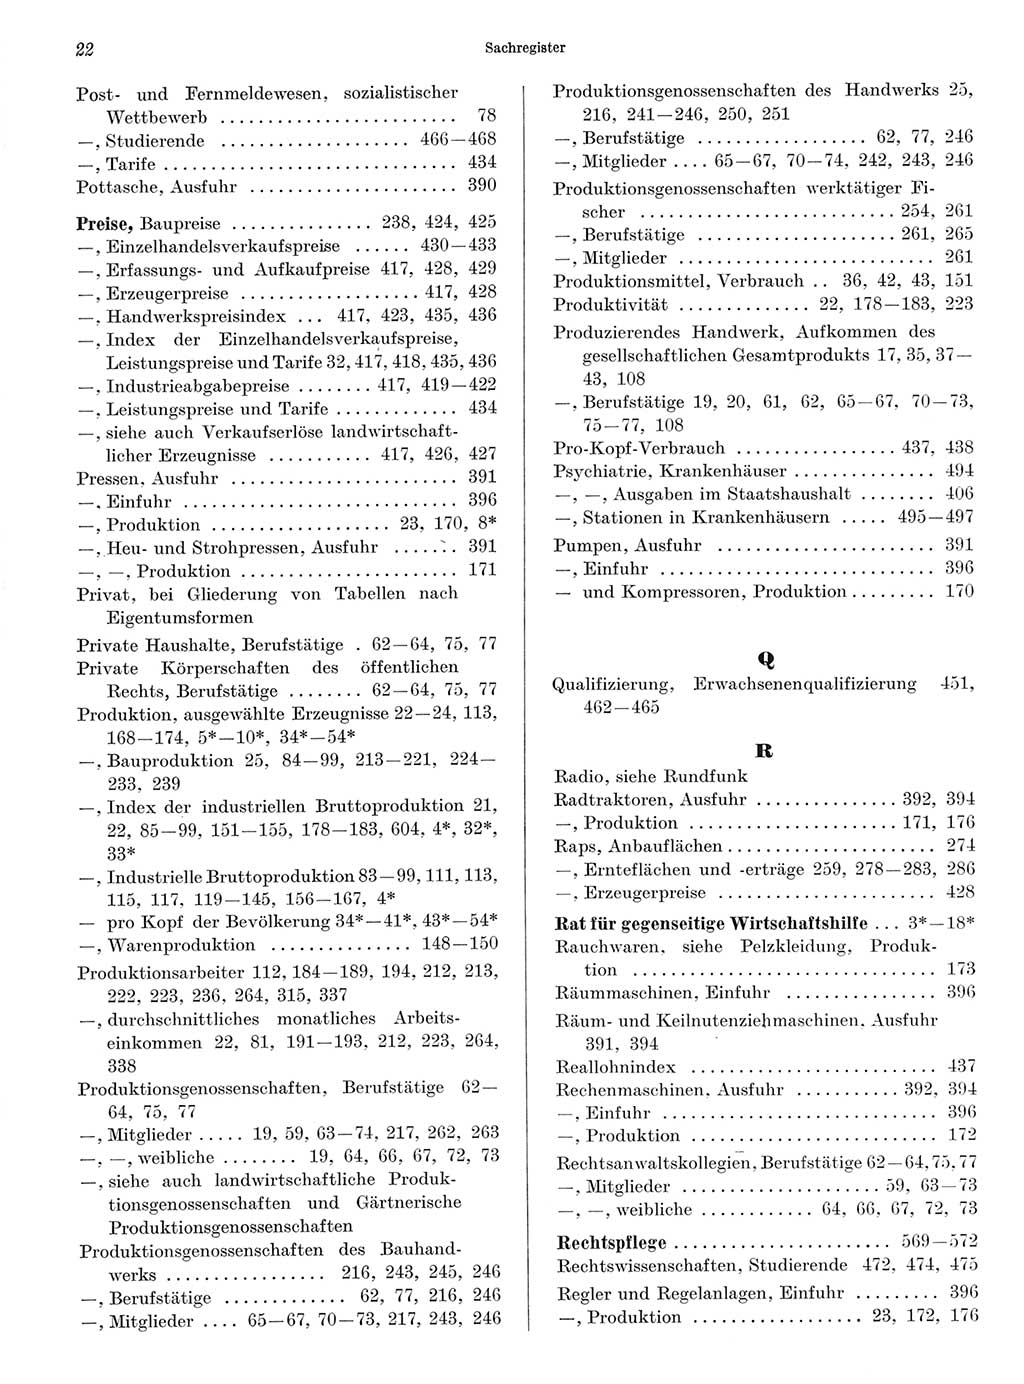 Statistisches Jahrbuch der Deutschen Demokratischen Republik (DDR) 1968, Seite 22 (Stat. Jb. DDR 1968, S. 22)